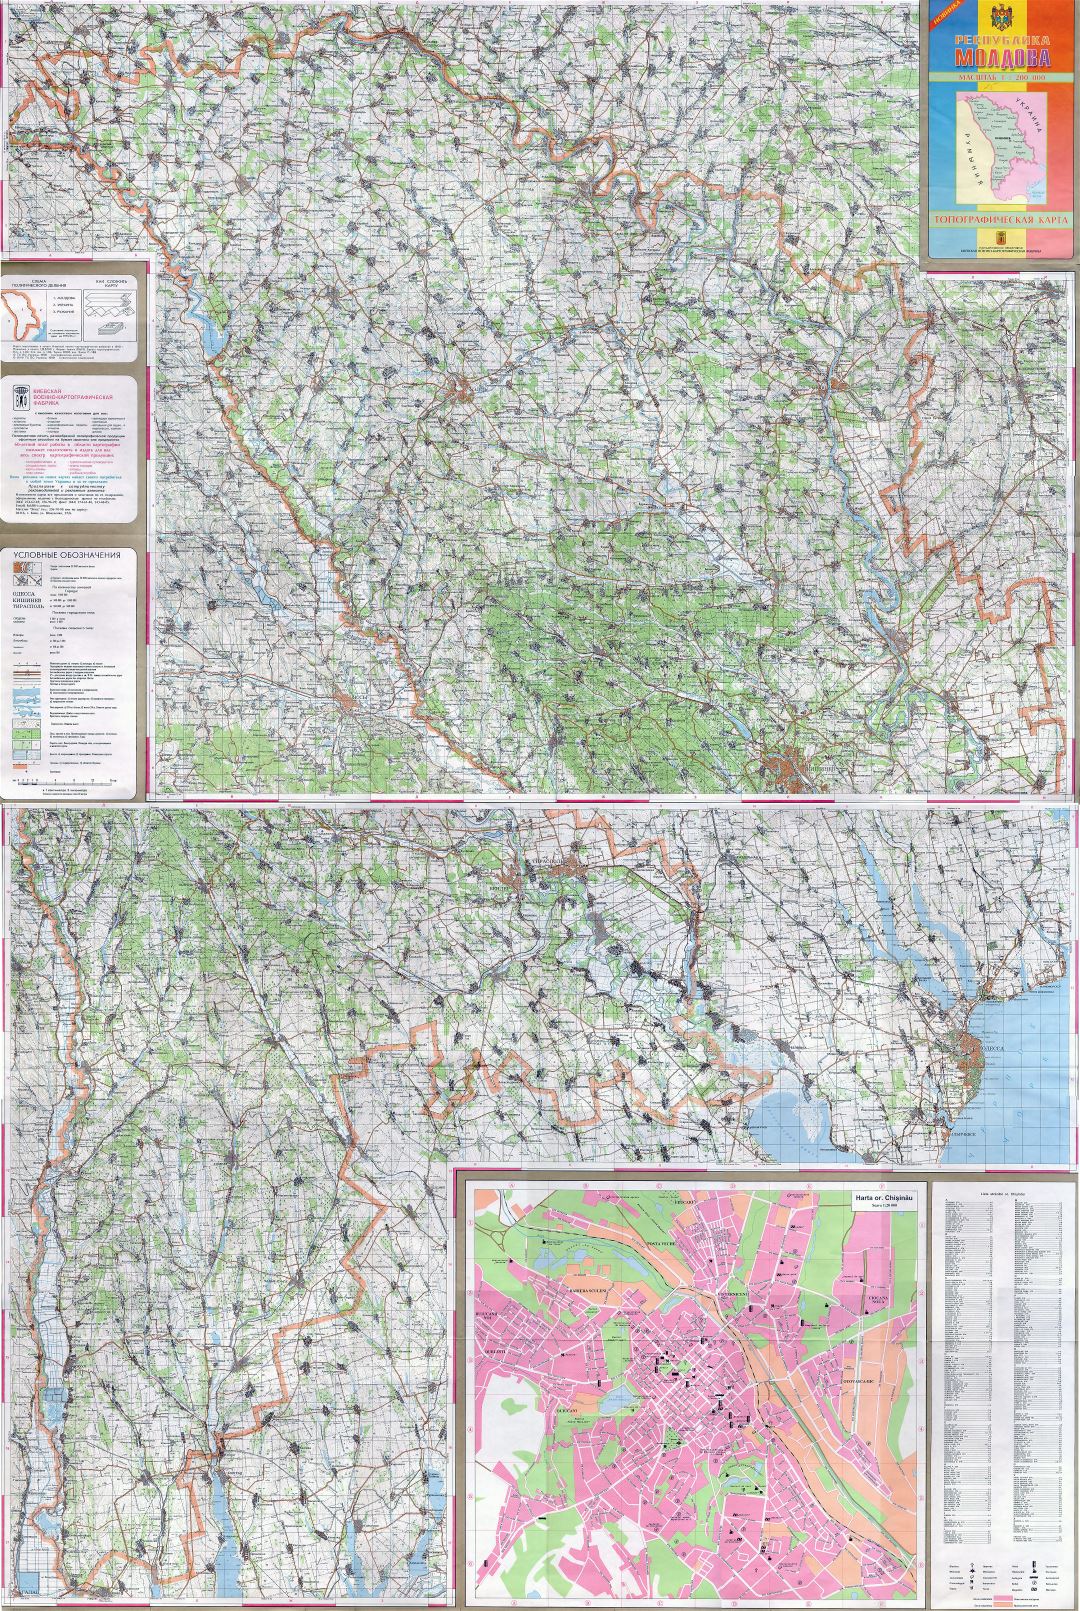 Grande detallado mapa topográfico de Moldova en ruso